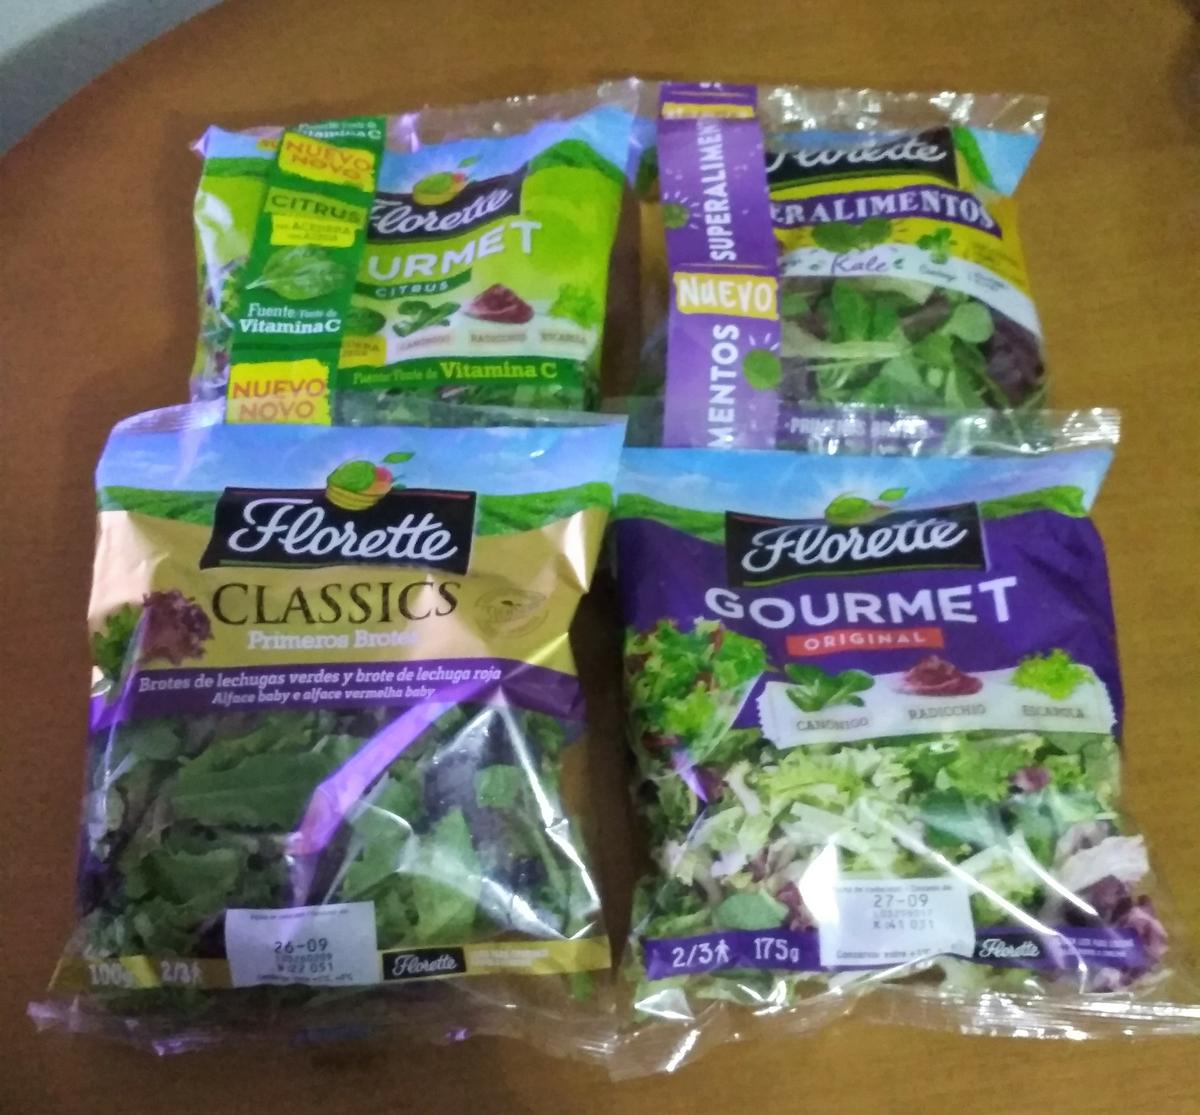 Florette amplía su gama de ensaladas completas - Financial Food